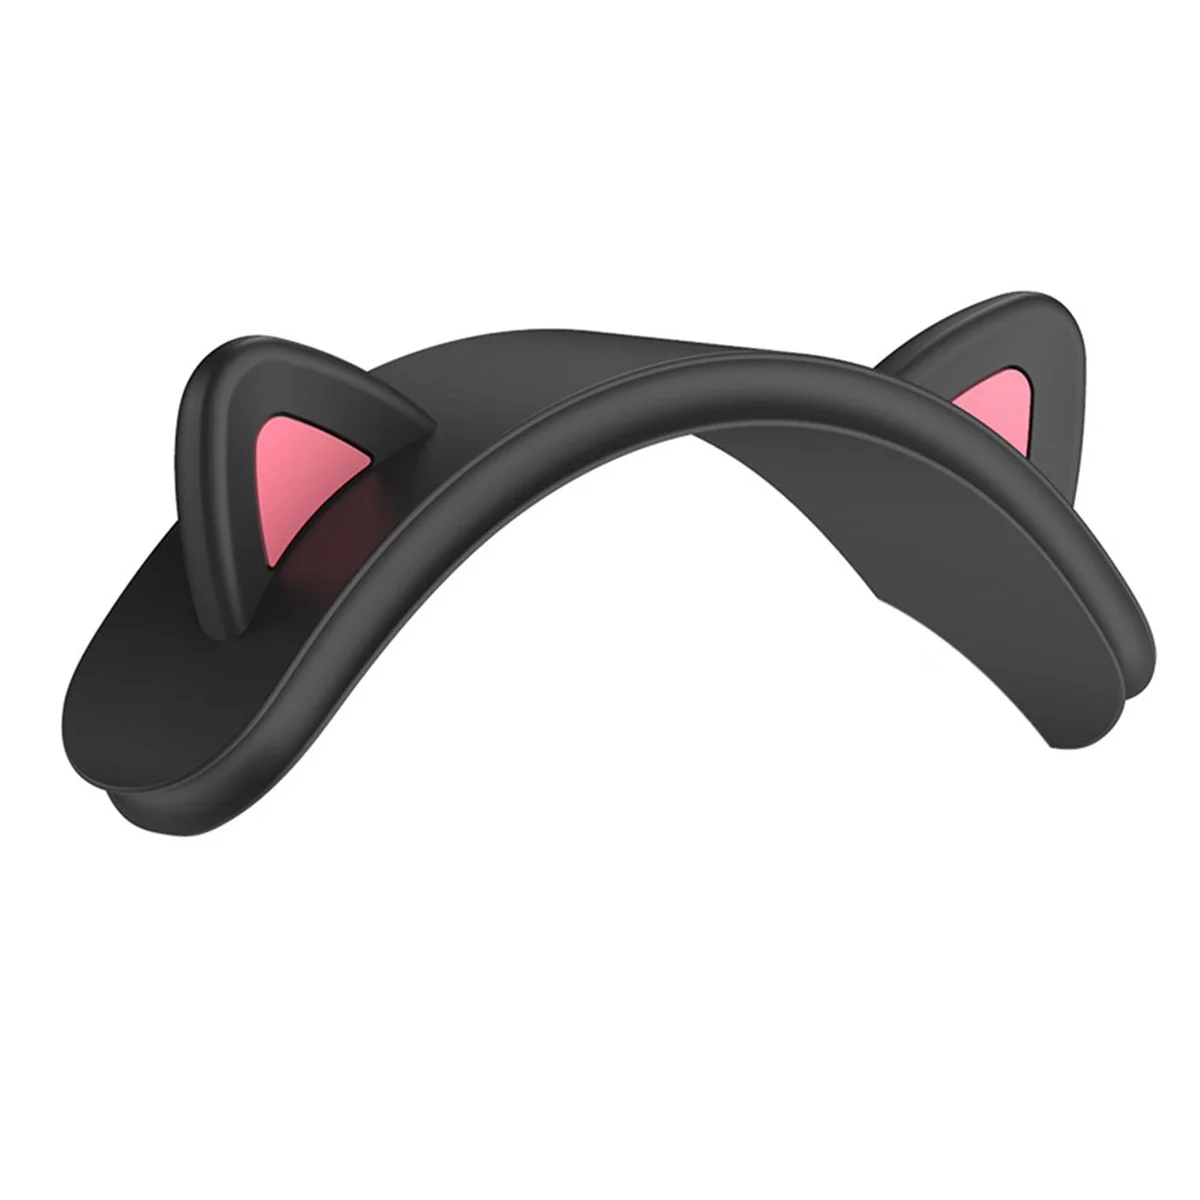 Для Apple Airpods Max Многофункциональная беспроводная Bluetooth-гарнитура перекладина Кошачьи ушки Силиконовый Защитный чехол, черный